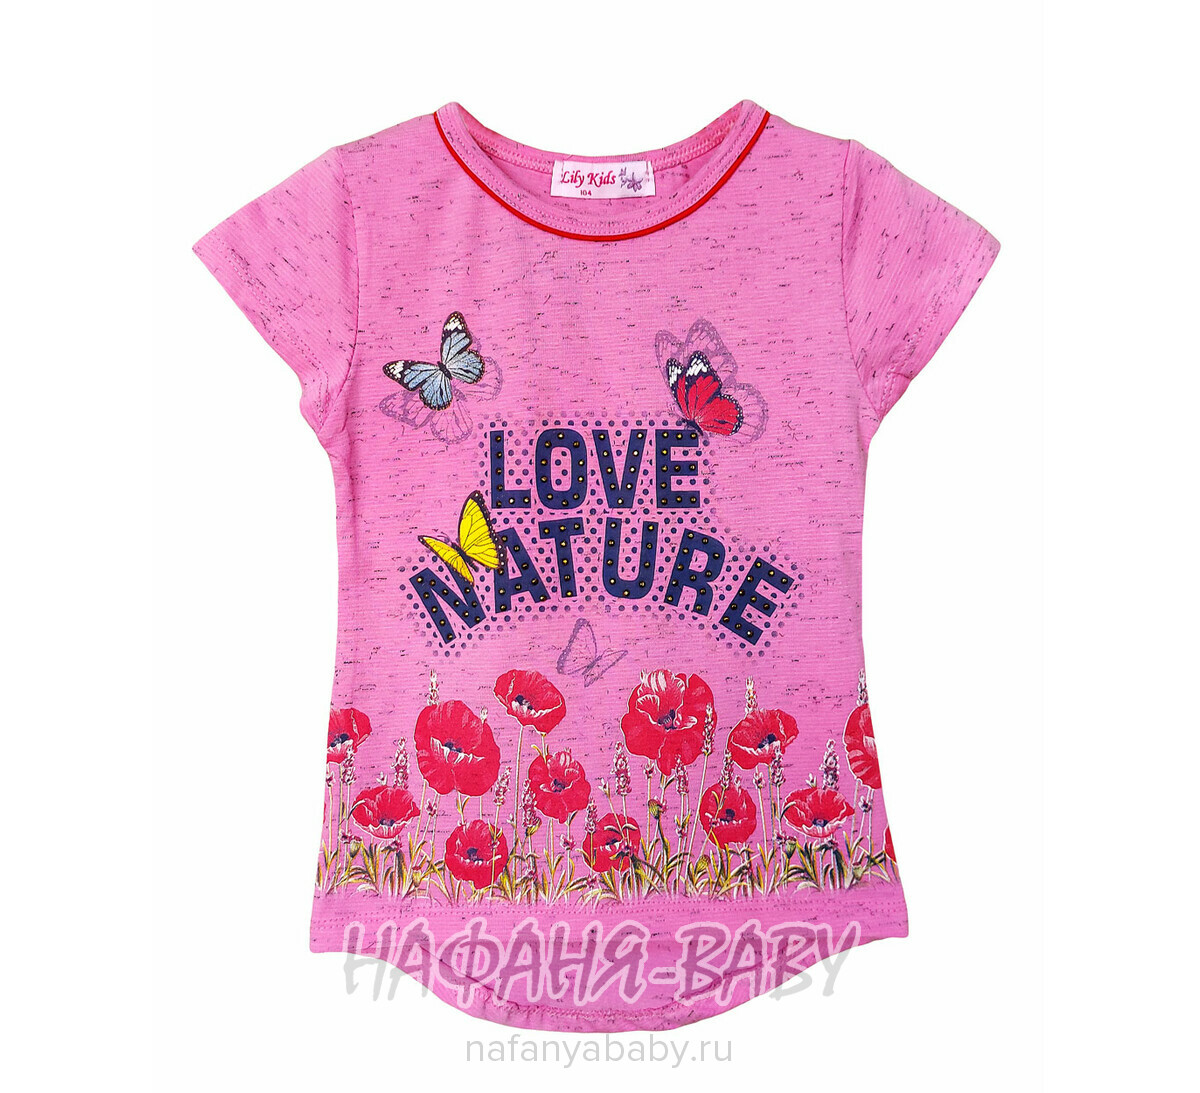 Детская футболка LILY Kids арт: 3507, 5-9 лет, 1-4 года, цвет персиковый меланж, оптом Турция